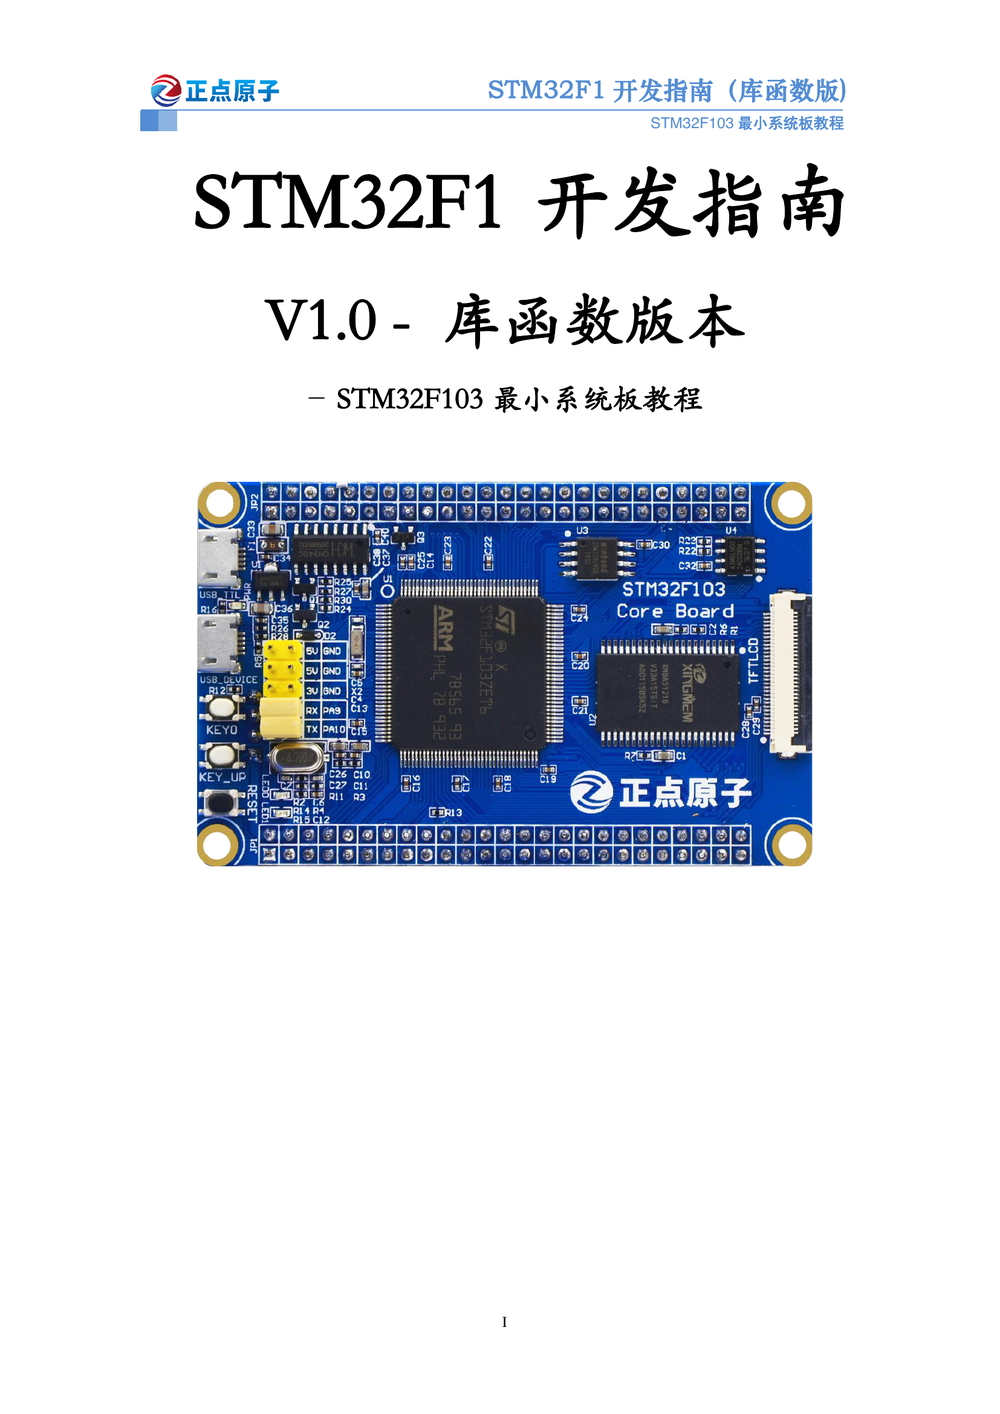 STM32F103最小系统板开发指南-库函数版本_V1.0.pdf-第1页.png